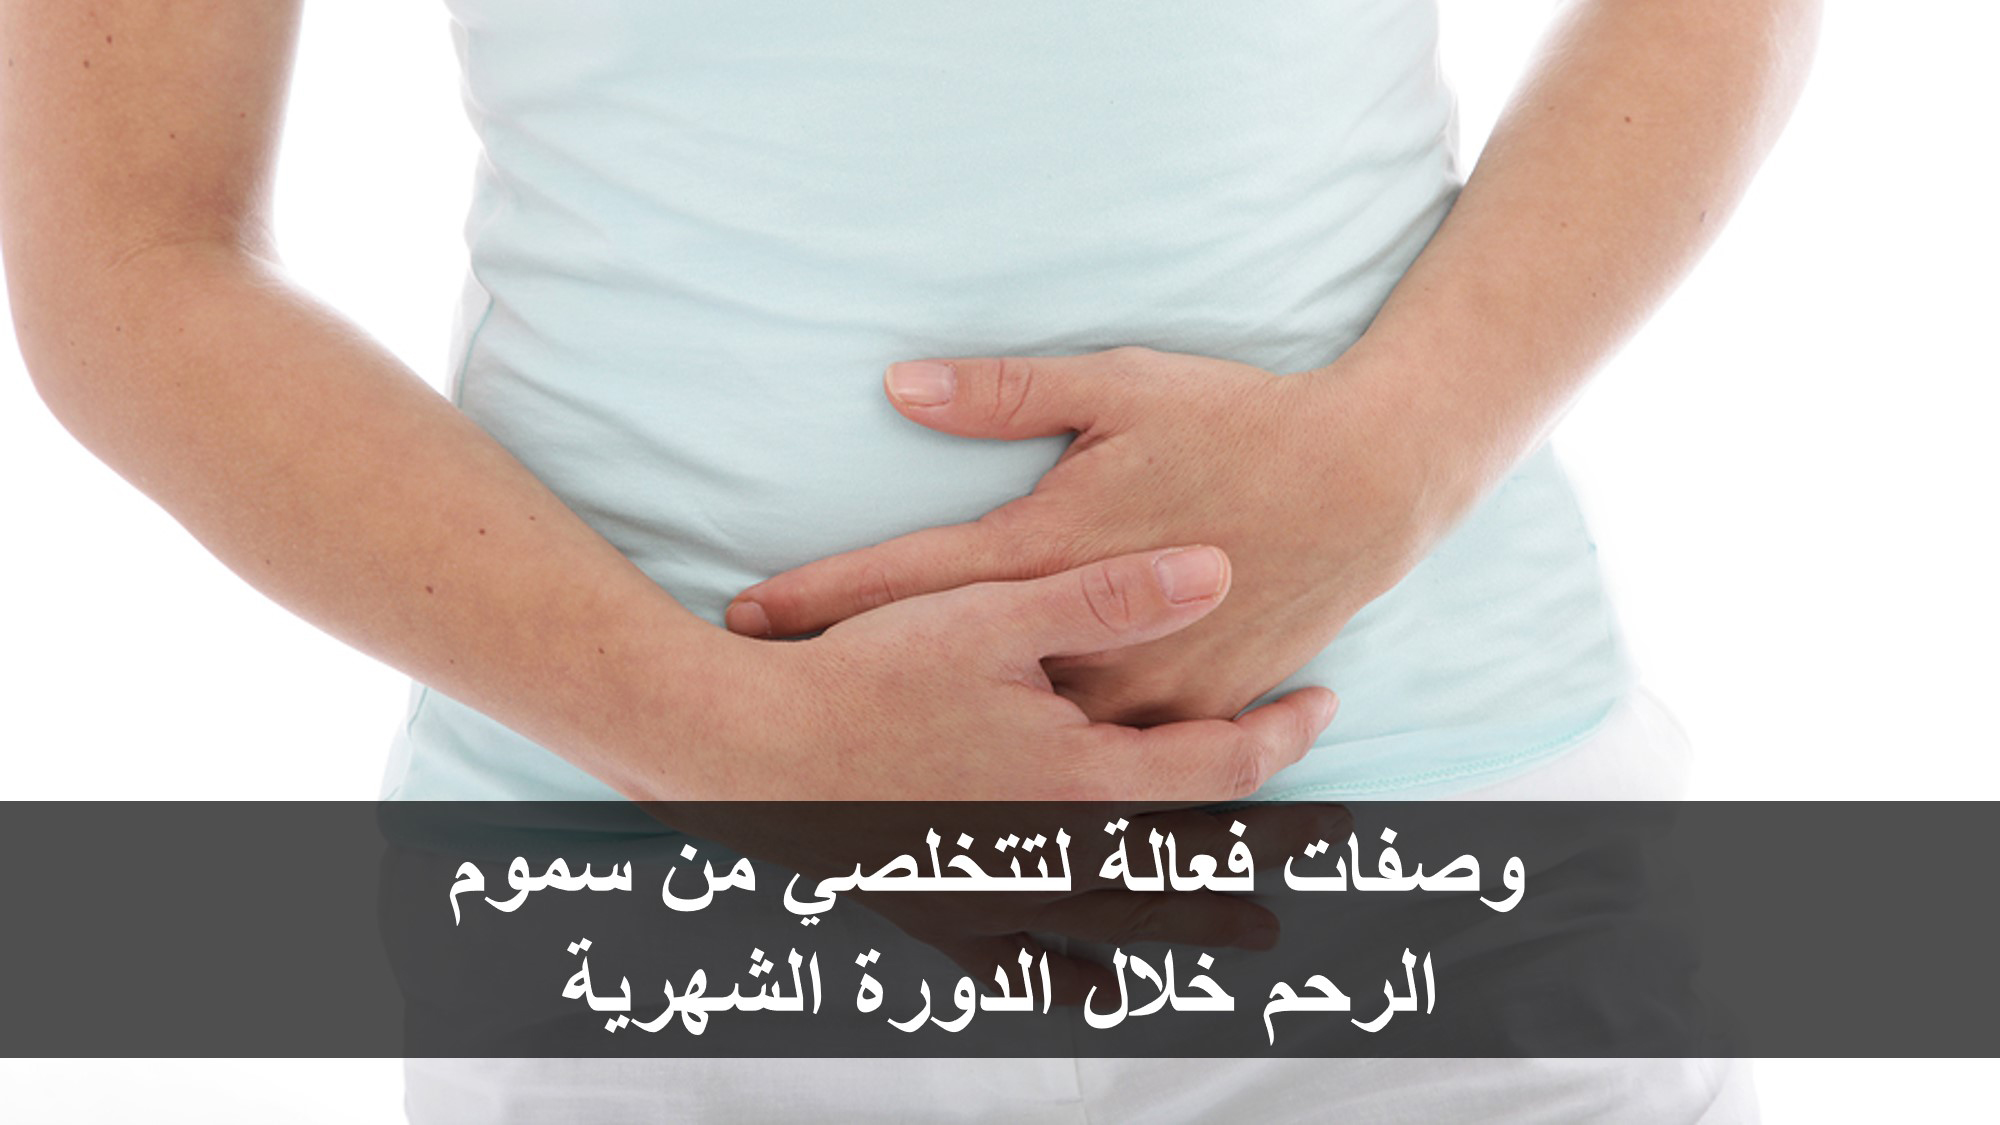  وصفات فعالة لتتخلصي من سموم الرحم خلال الدورة الشهرية